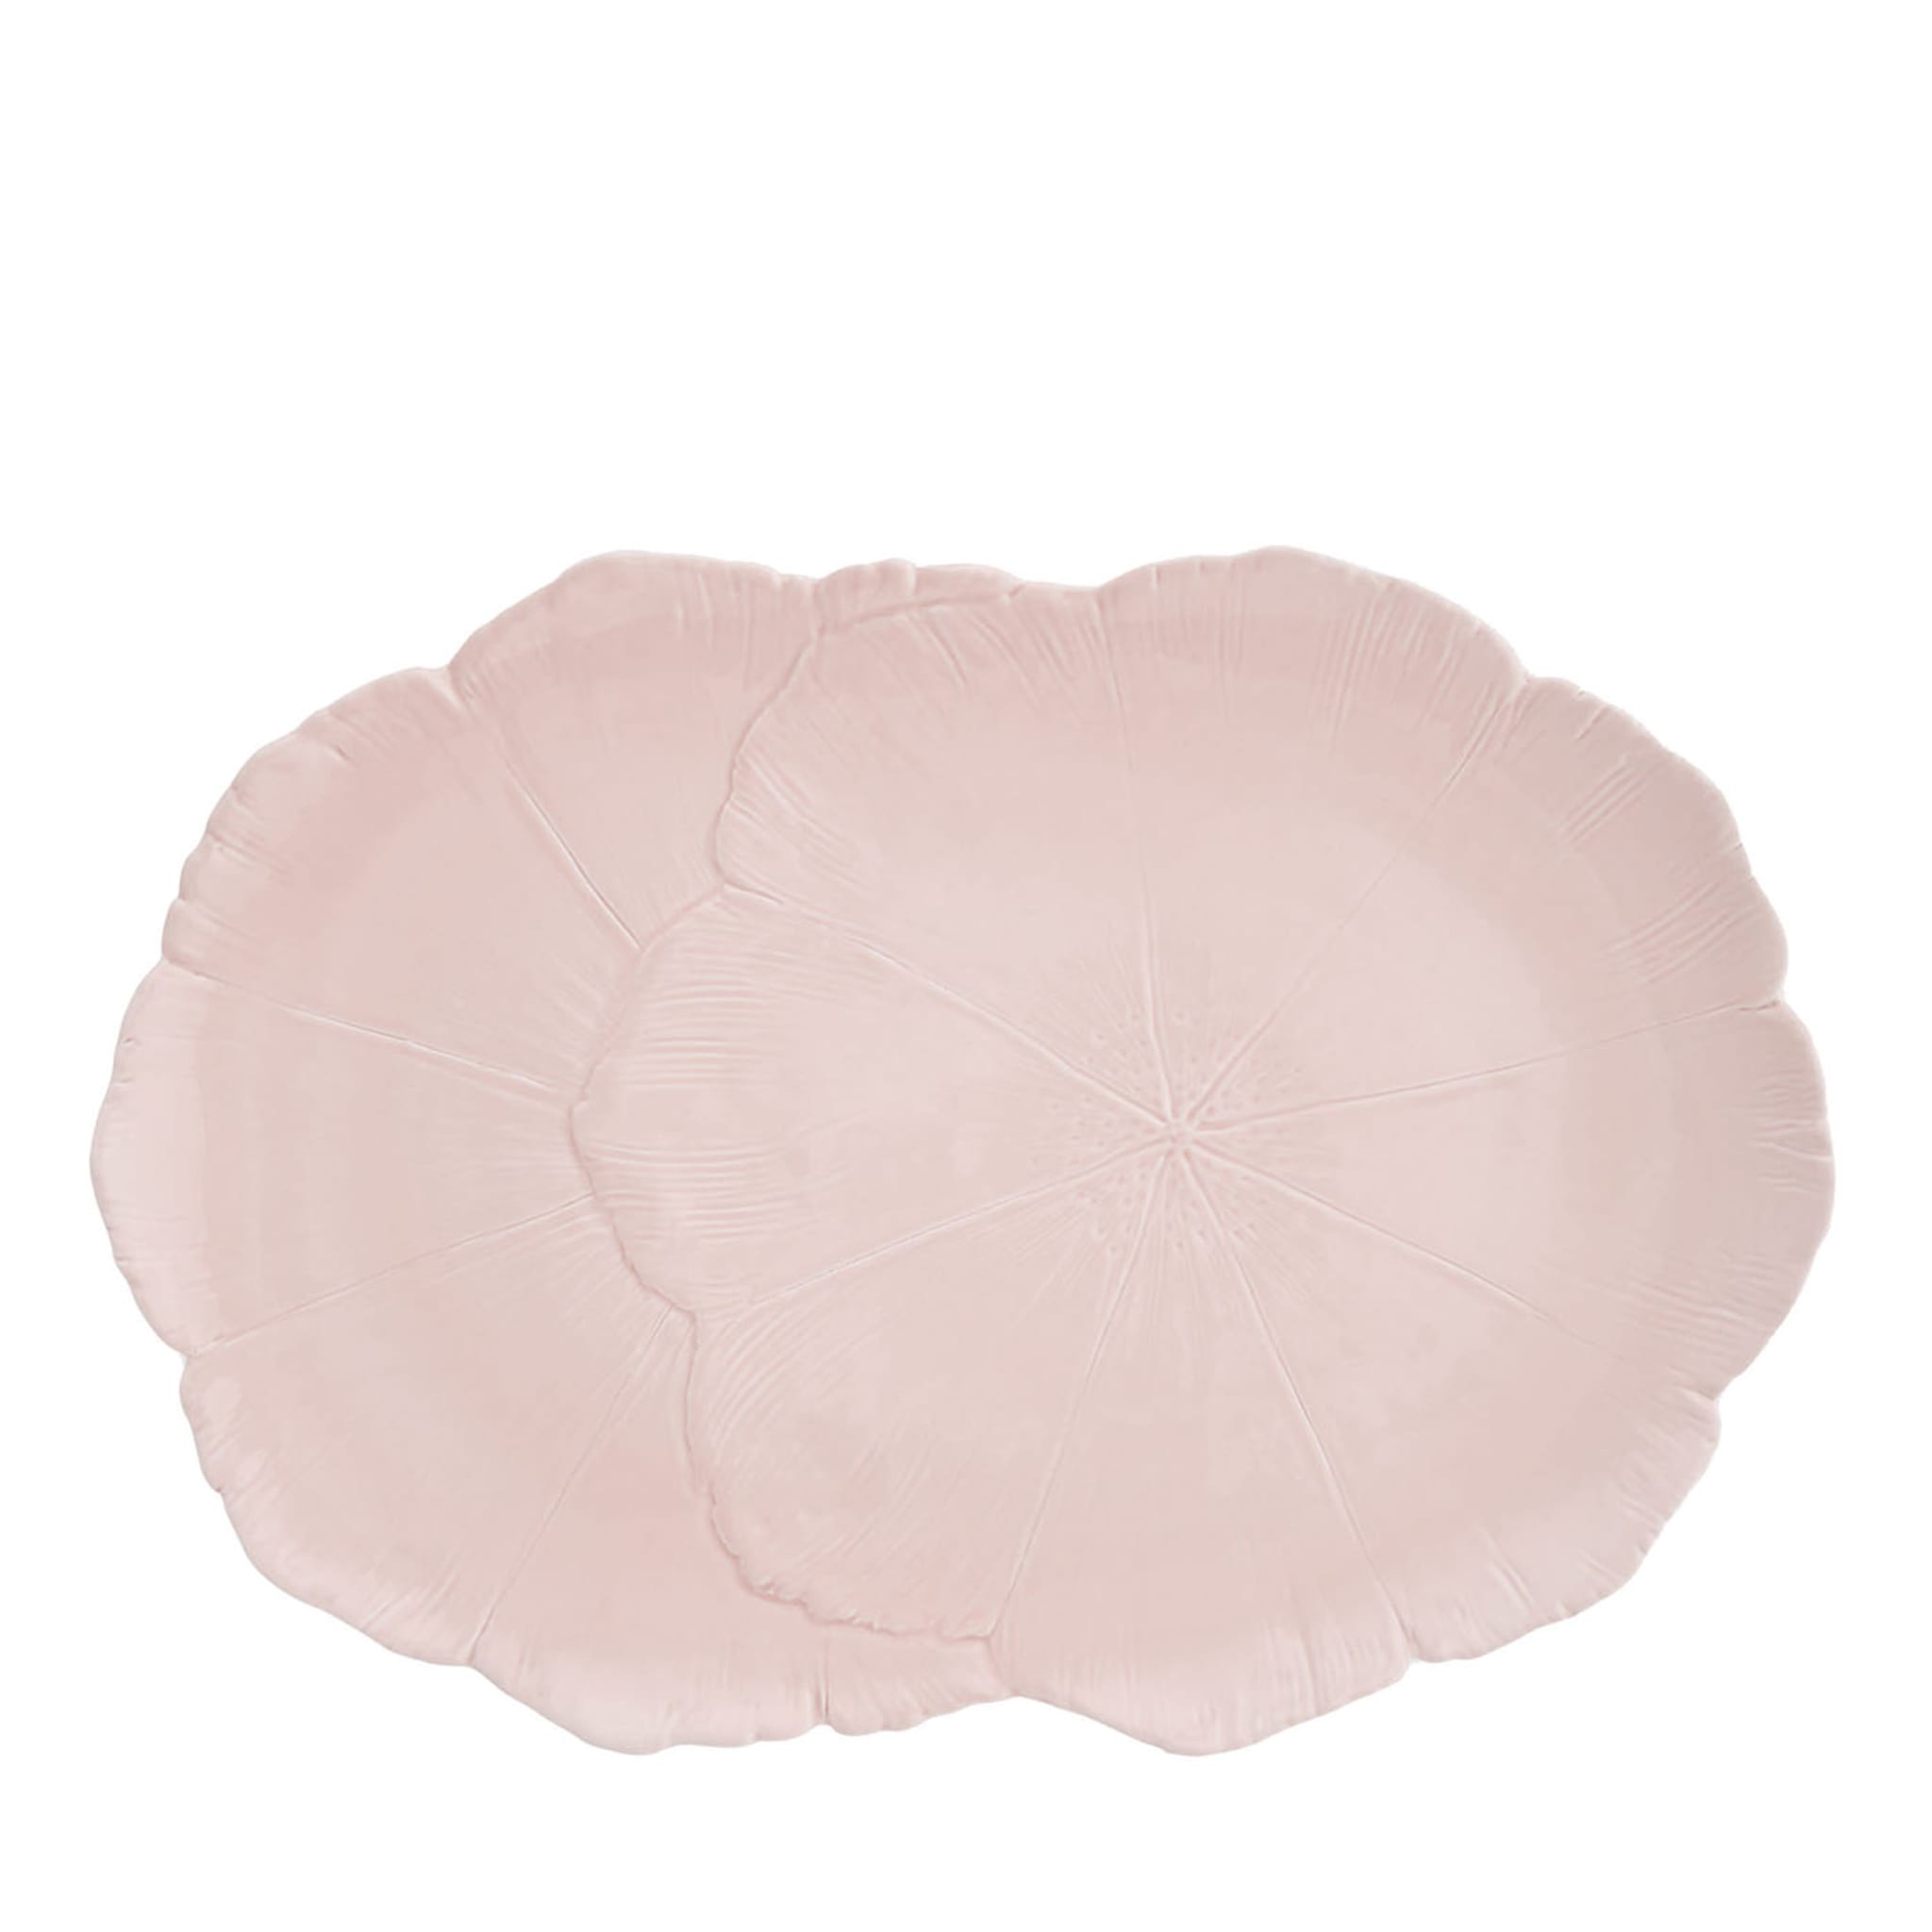 Piatto ovale in ceramica fine rosa fiore di ciliegio  - Vista principale